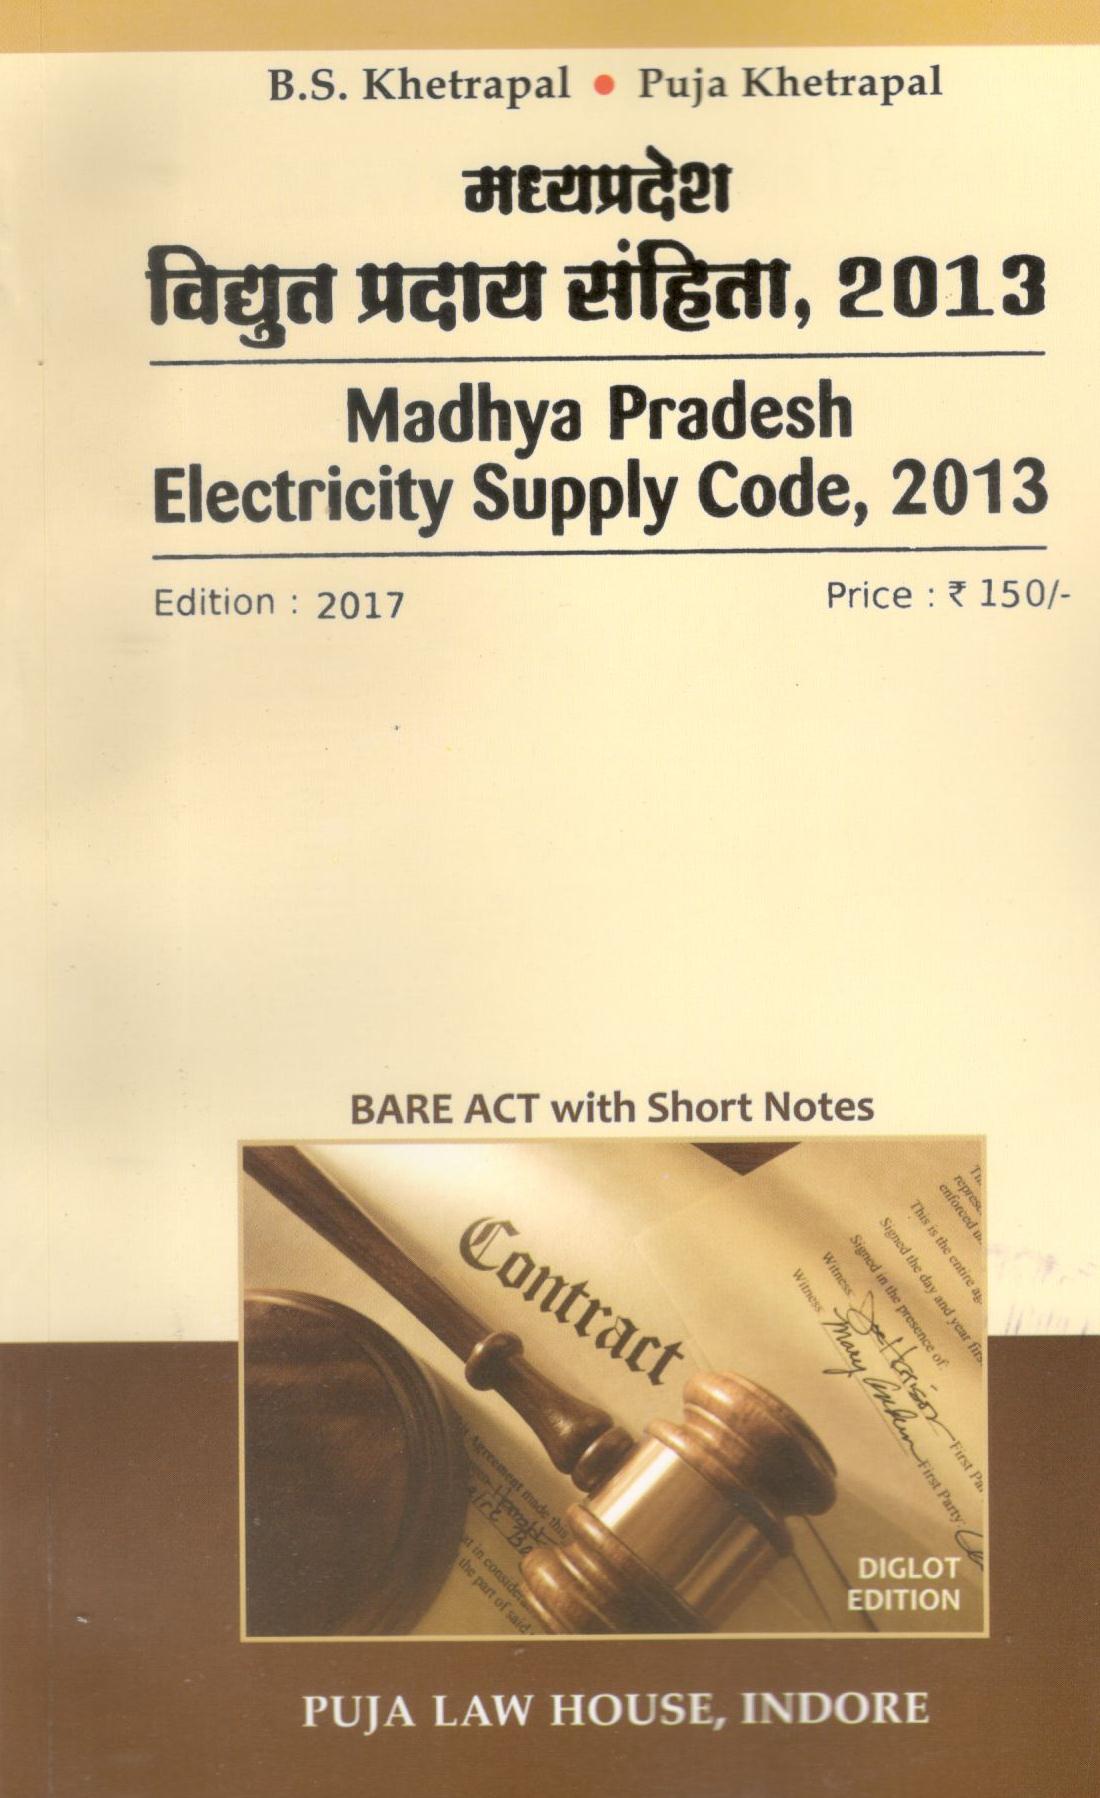 मध्य प्रदेश विद्युत प्रदाय संहिता, 2013 / Madhya Pradesh Electriciy Supply Code, 2013 